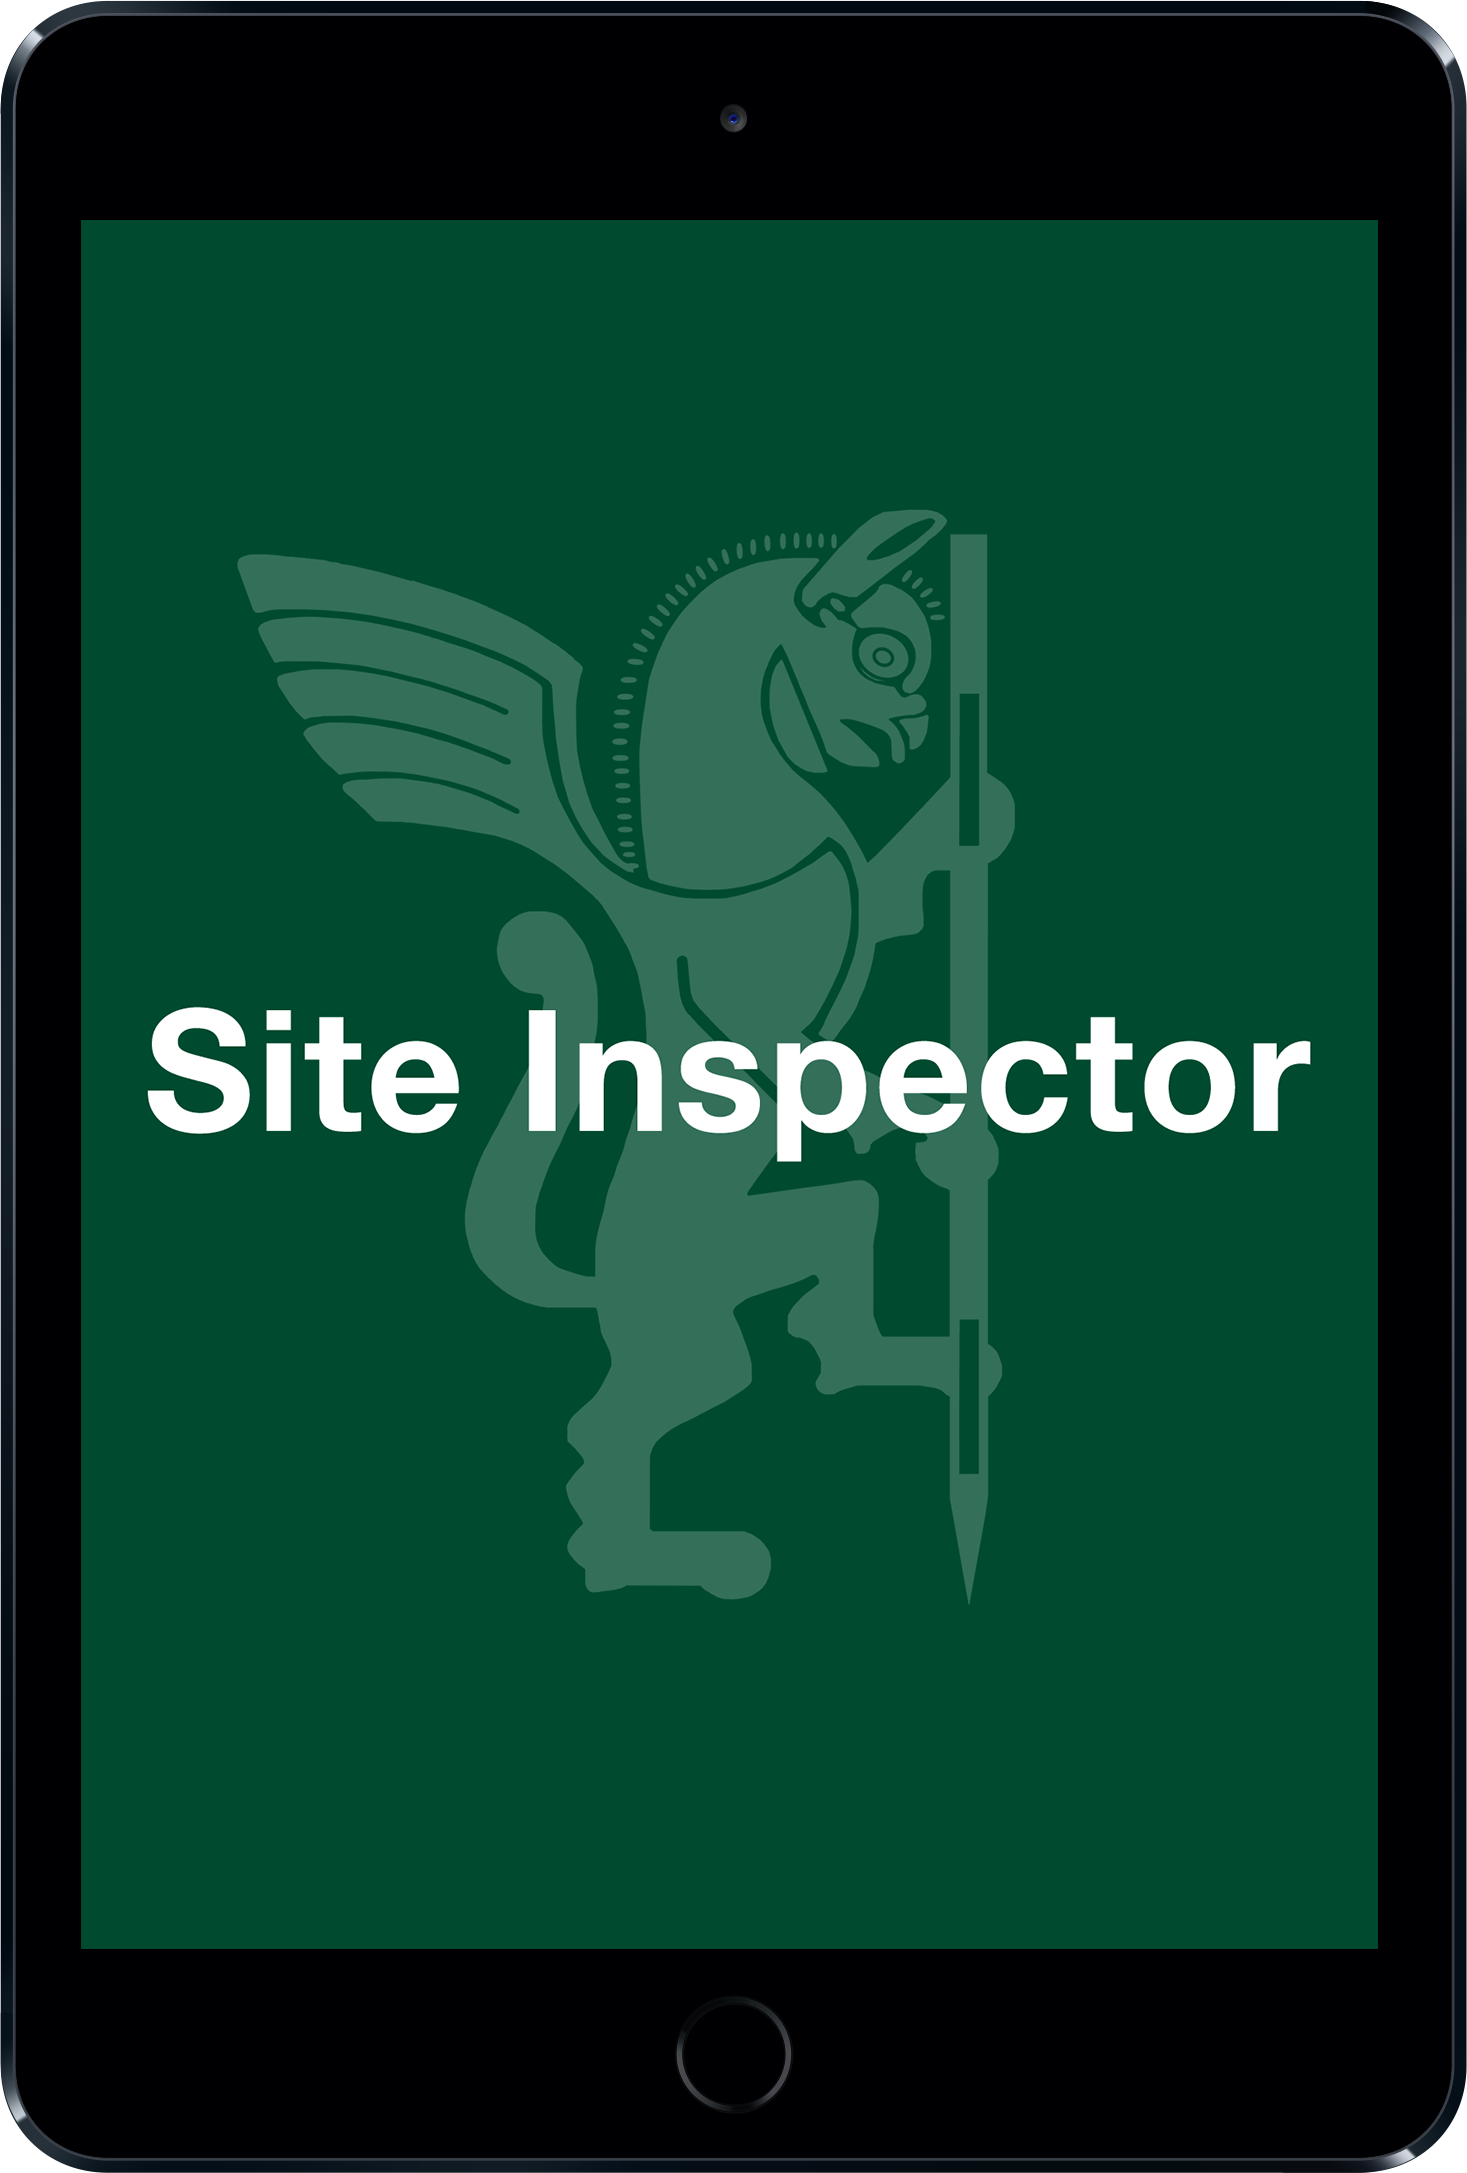 Site inspector 3e0d8f470b7c2ecfc616bd8a957afe3f34fbb053cec304ad53eab25e2889c841